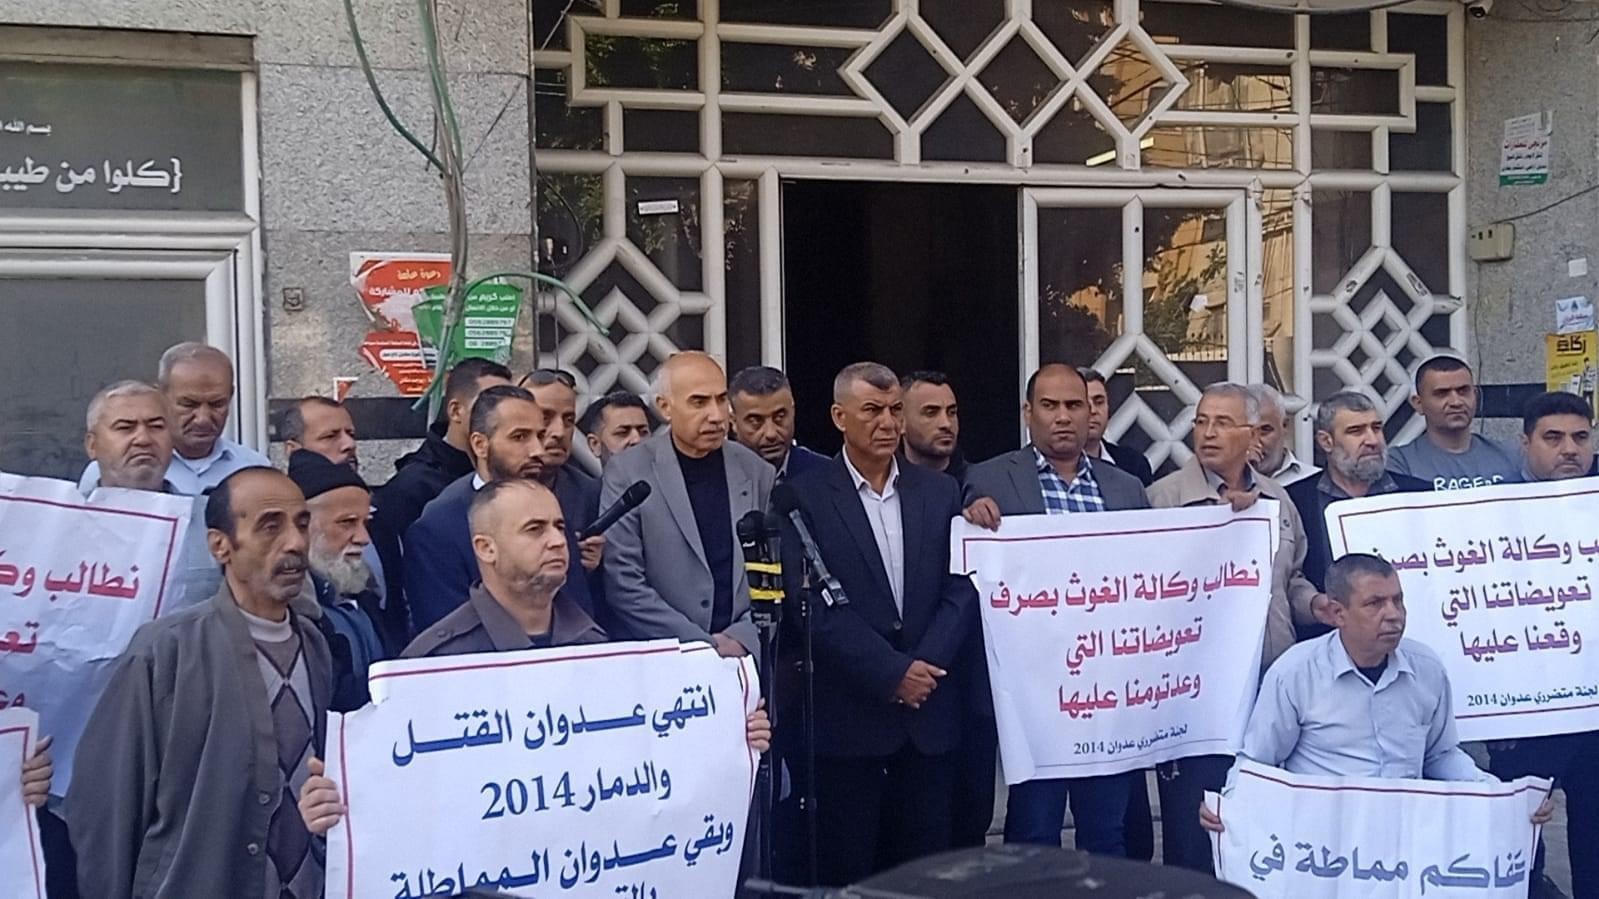 غزة: وقفة احتجاجية لمتضرري عدوان 2014 للمطالبة بتعويضهم